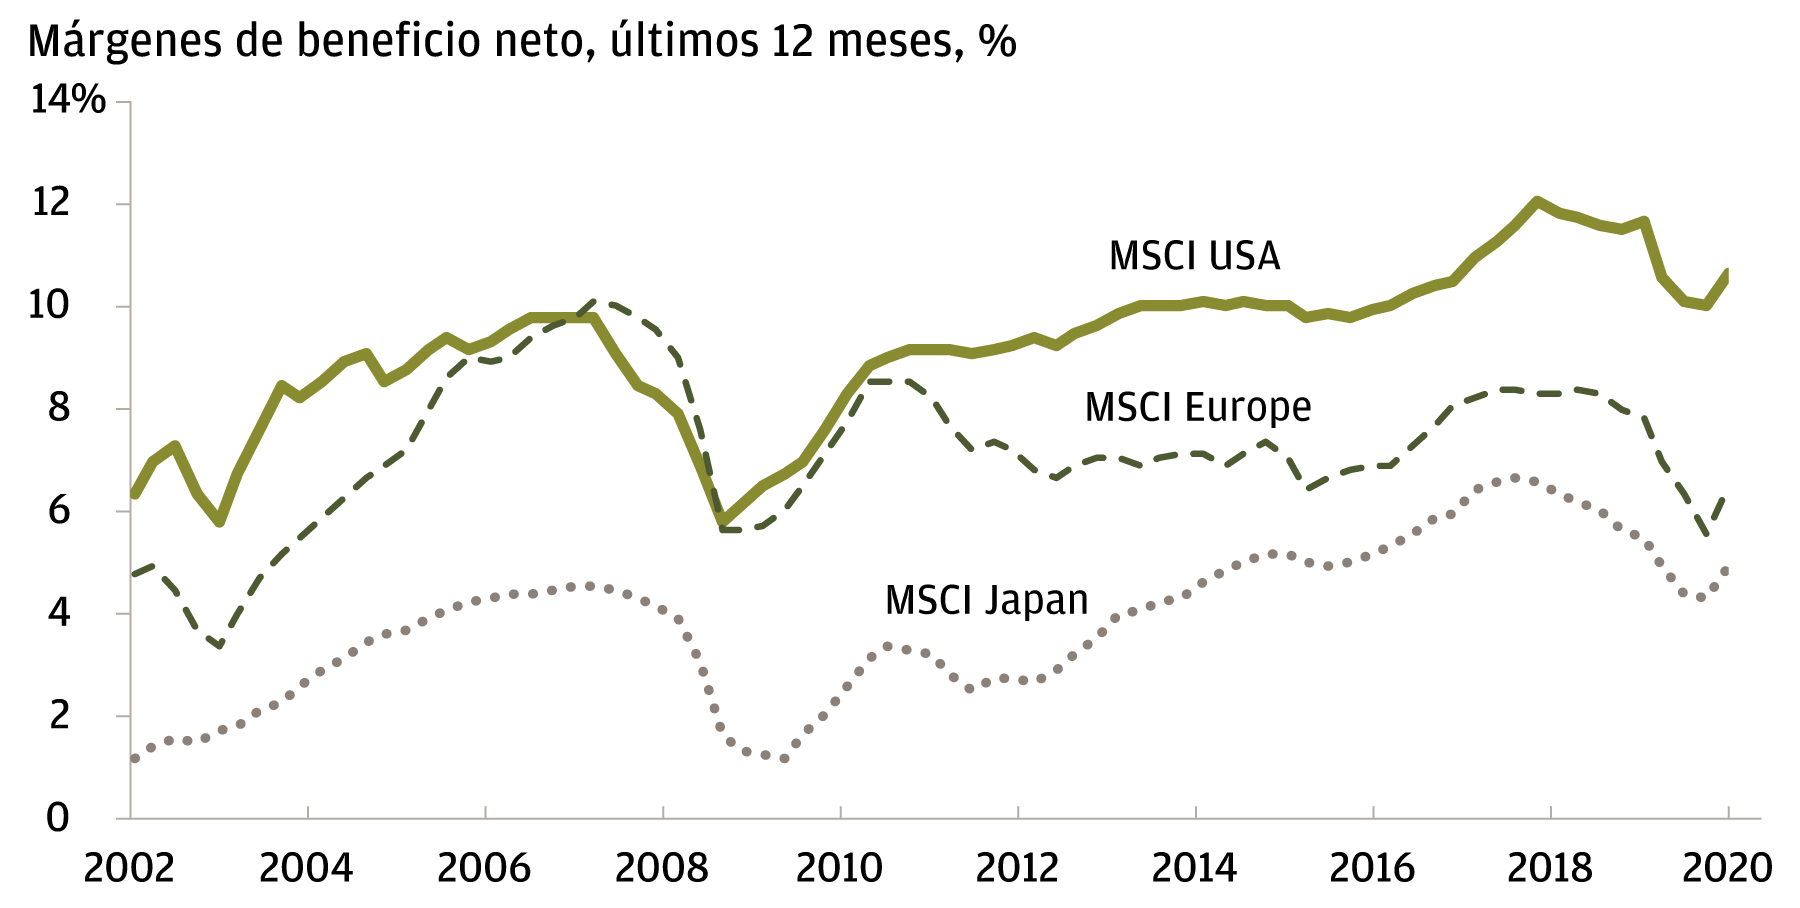 El gráfico lineal muestra los márgenes de beneficio neto según MSCI para Estados Unidos, Europa y Japón, entre 2002 y 2021. Las fuentes de los datos son MSCI y Factset, los datos se incluyen hasta el primer trimestre de 2021. En 2002, los márgenes de beneficio neto del MSCI en Estados Unidos ascendían aproximadamente al 6%, aproximadamente al 5% en Europa y aproximadamente al 1% en Japón. En el primer trimestre de 2021, los márgenes de beneficio neto del MSCI ascienden aproximadamente al 11% en Estados Unidos, aproximadamente al 6% en Europa y aproximadamente al 5% en Japón. 